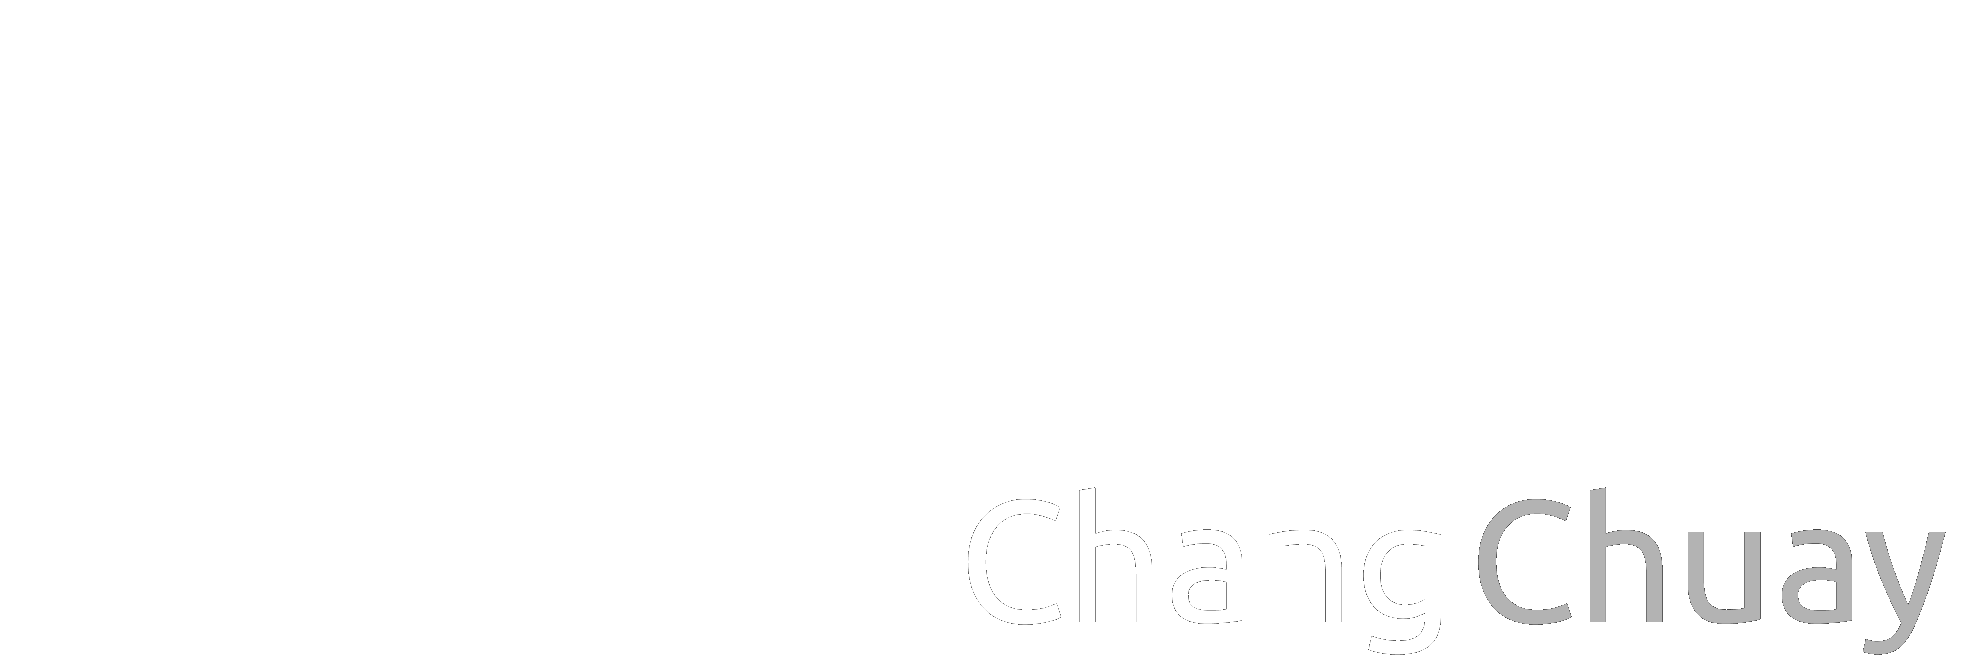 Chang Chuay - Weboasis